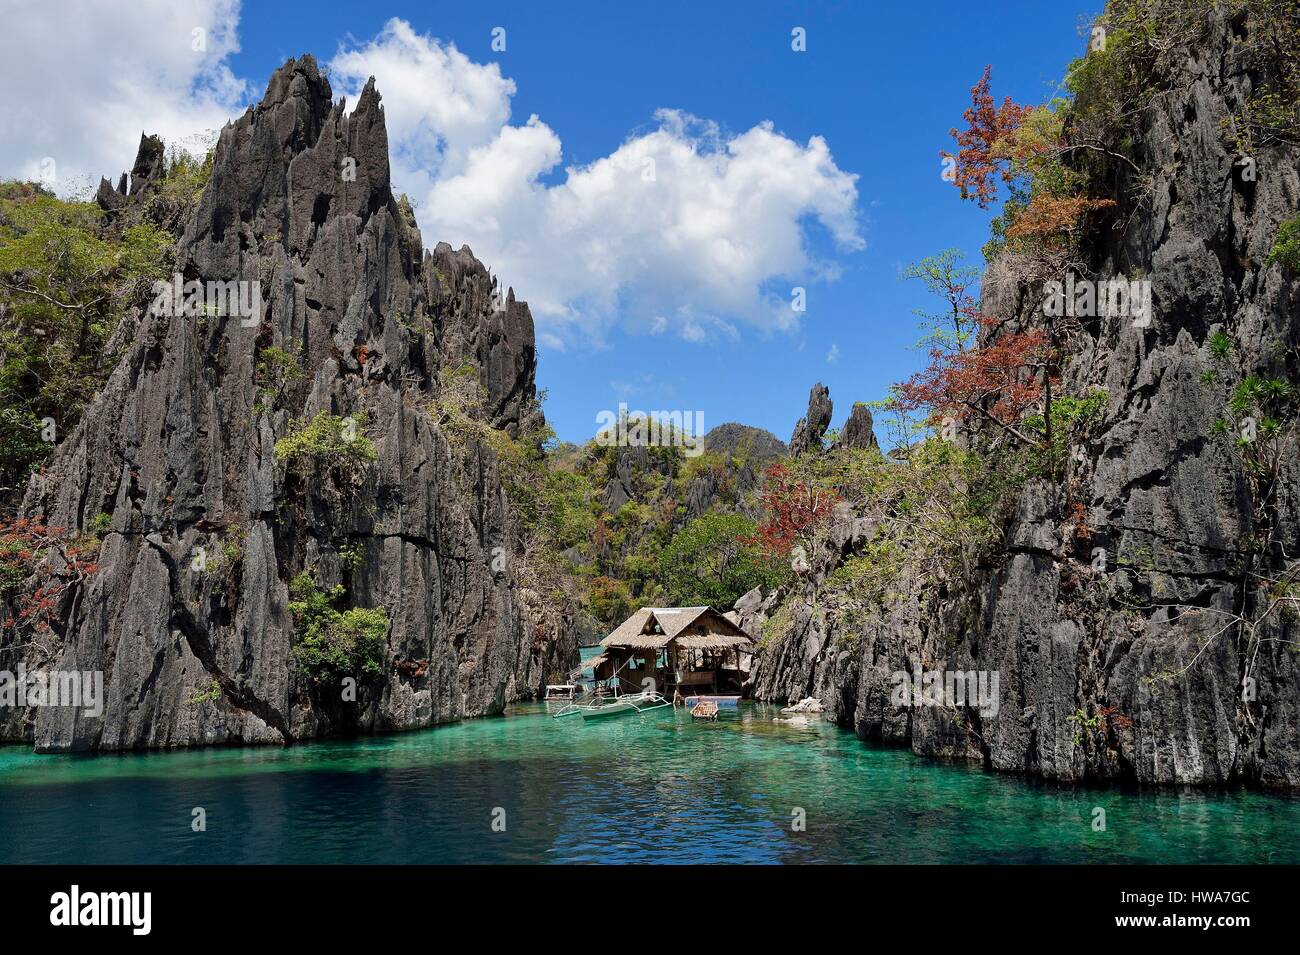 Philippines, Îles Calamian dans le nord de Palawan, l'Île Coron, zone biotique naturel lagoon et du Permien d'origine calcaire jurassique des falaises Banque D'Images